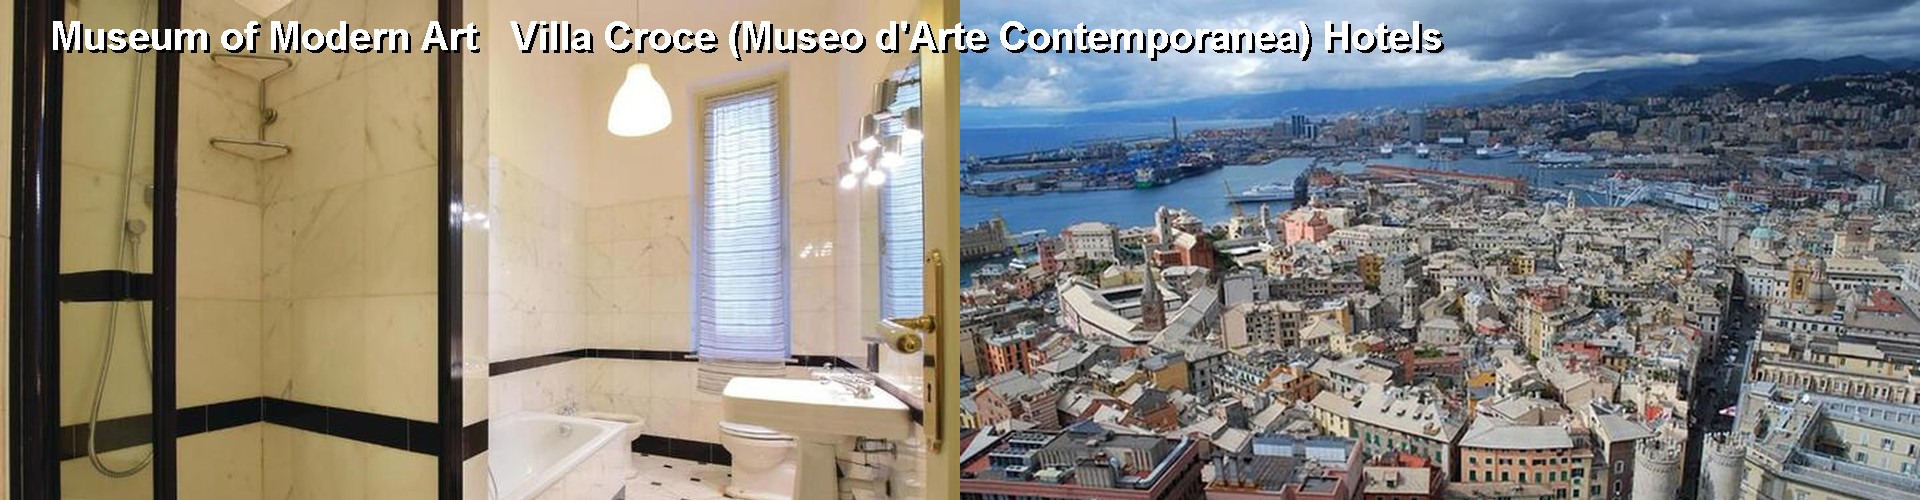 5 Best Hotels near Museum of Modern Art   Villa Croce (Museo d'Arte Contemporanea)